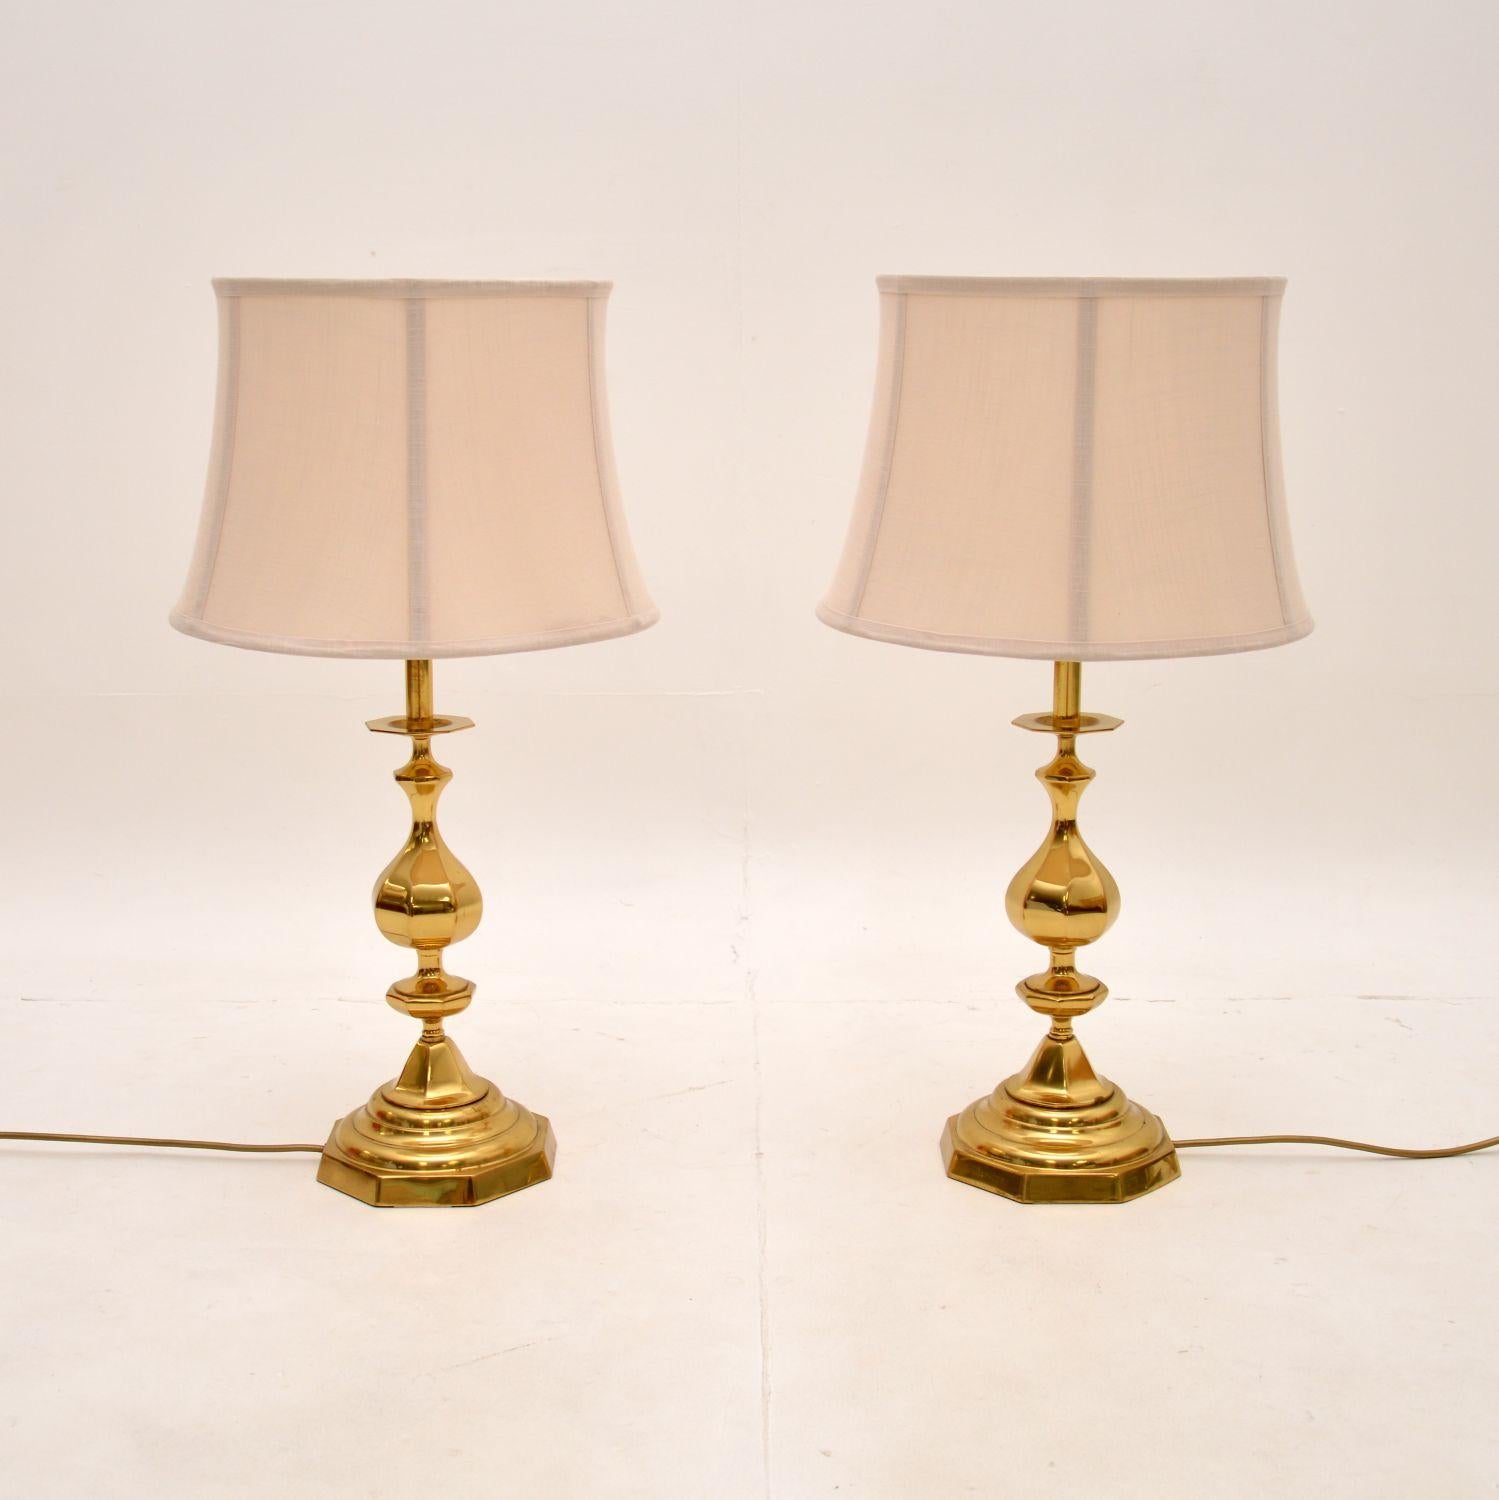 Ein großes und beeindruckendes Paar von Vintage-Tischlampen aus Messing. Sie wurden in England hergestellt und stammen etwa aus den 1970er Jahren.

Sie sind sehr stilvoll und haben eine beachtliche Größe. Die Qualität ist fantastisch, sie sind aus